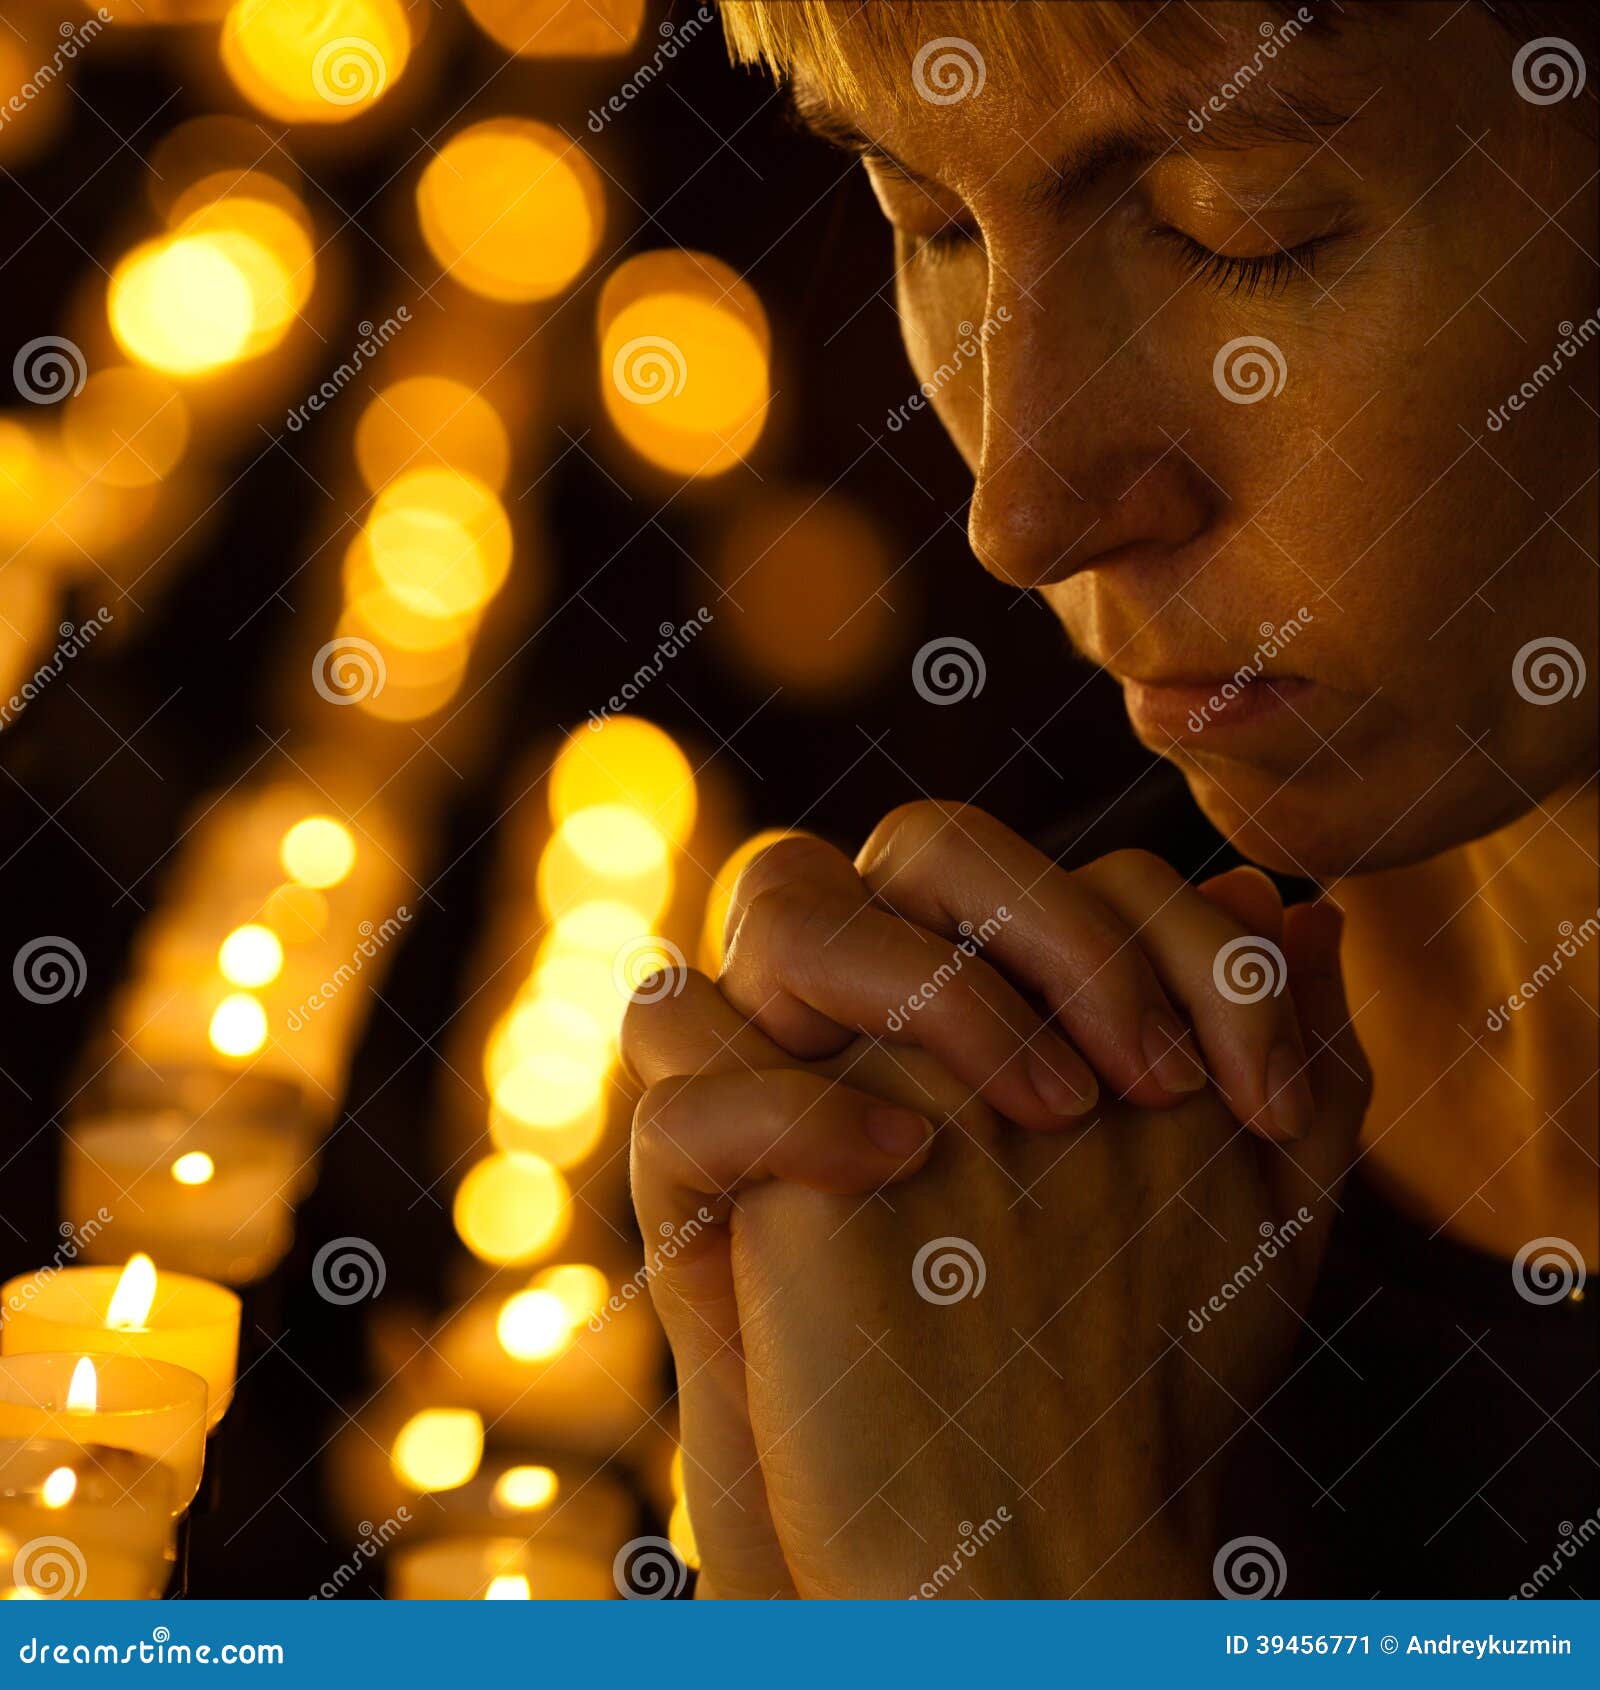 双手合十祈祷的中国男人 库存图片. 图片 包括有 祈祷, 折叠, 胡言乱语的, 运作, 沉寂, 浓度, 姿态 - 274106623